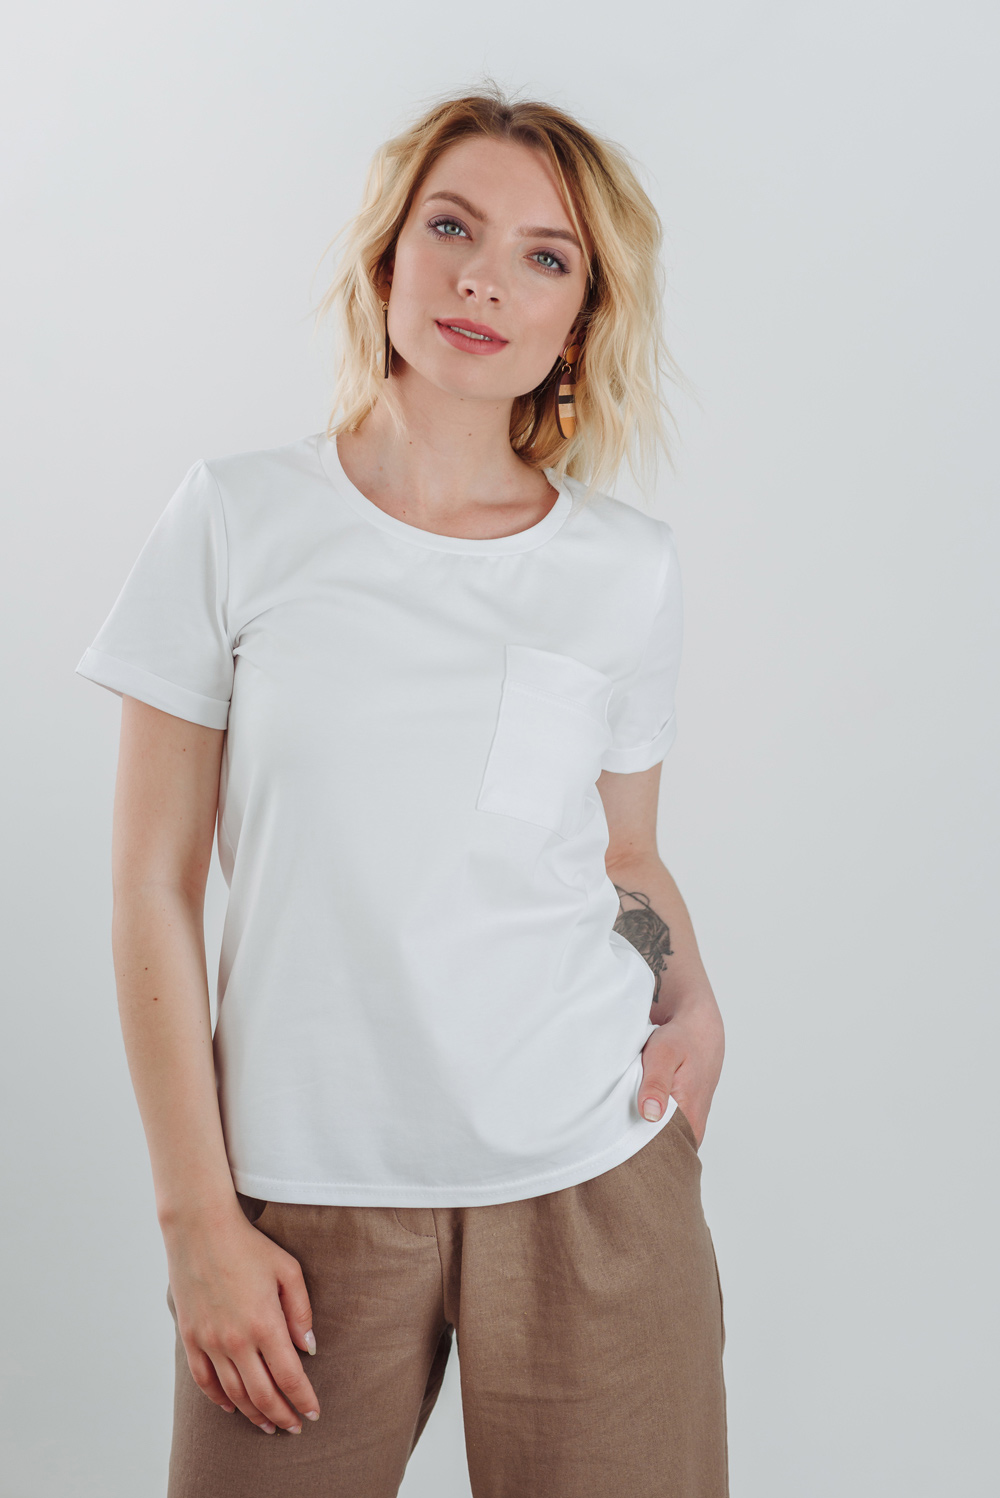 White basic t-shirt